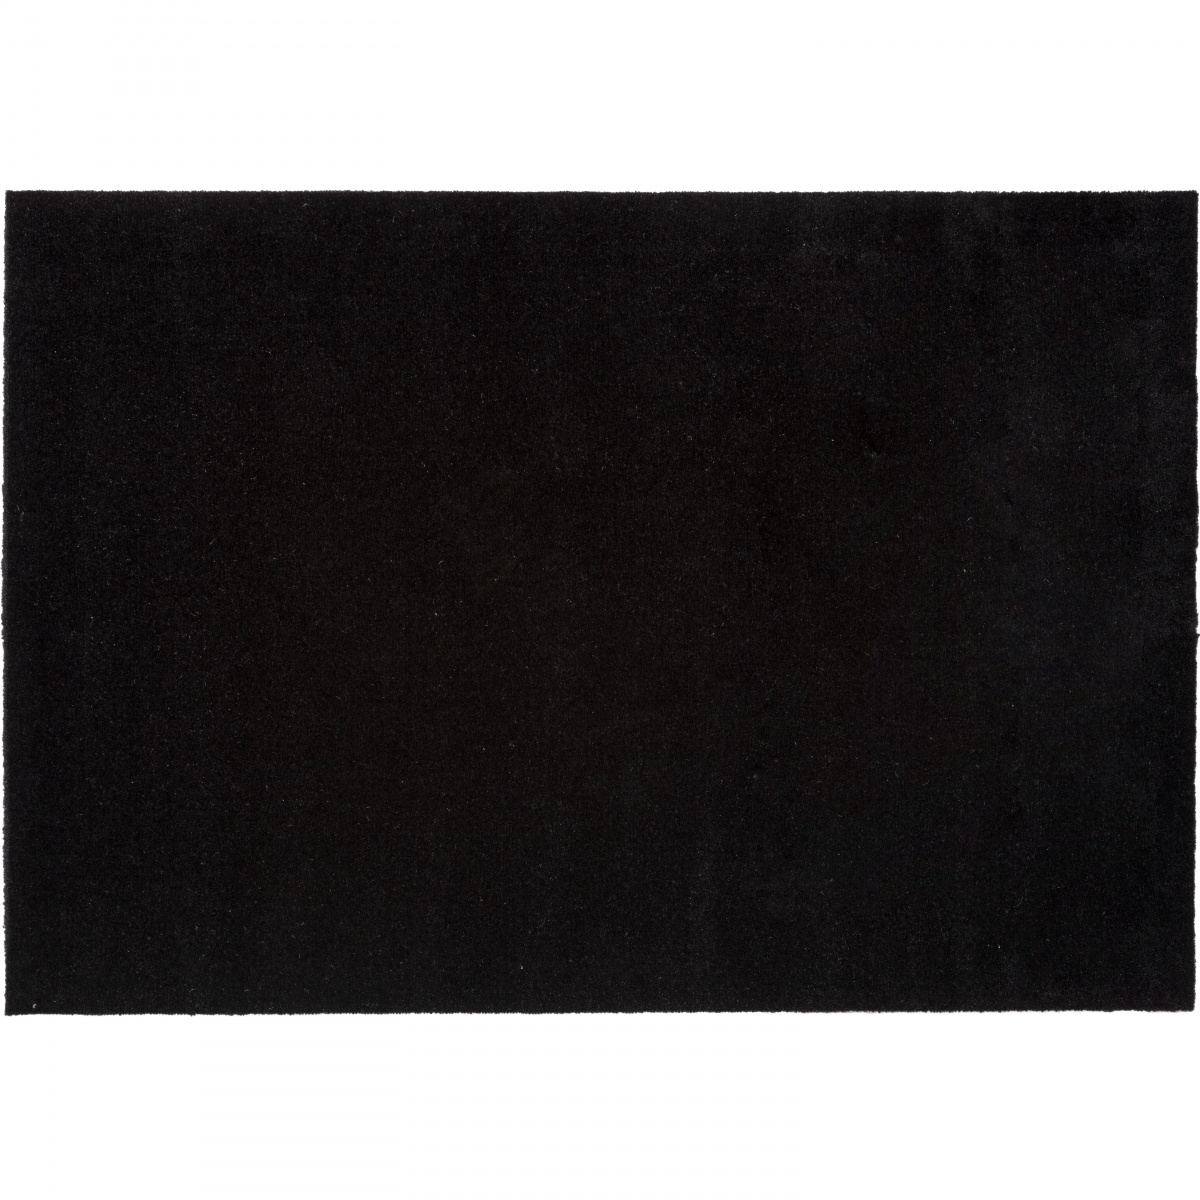 Tica door mat, black - 90x130